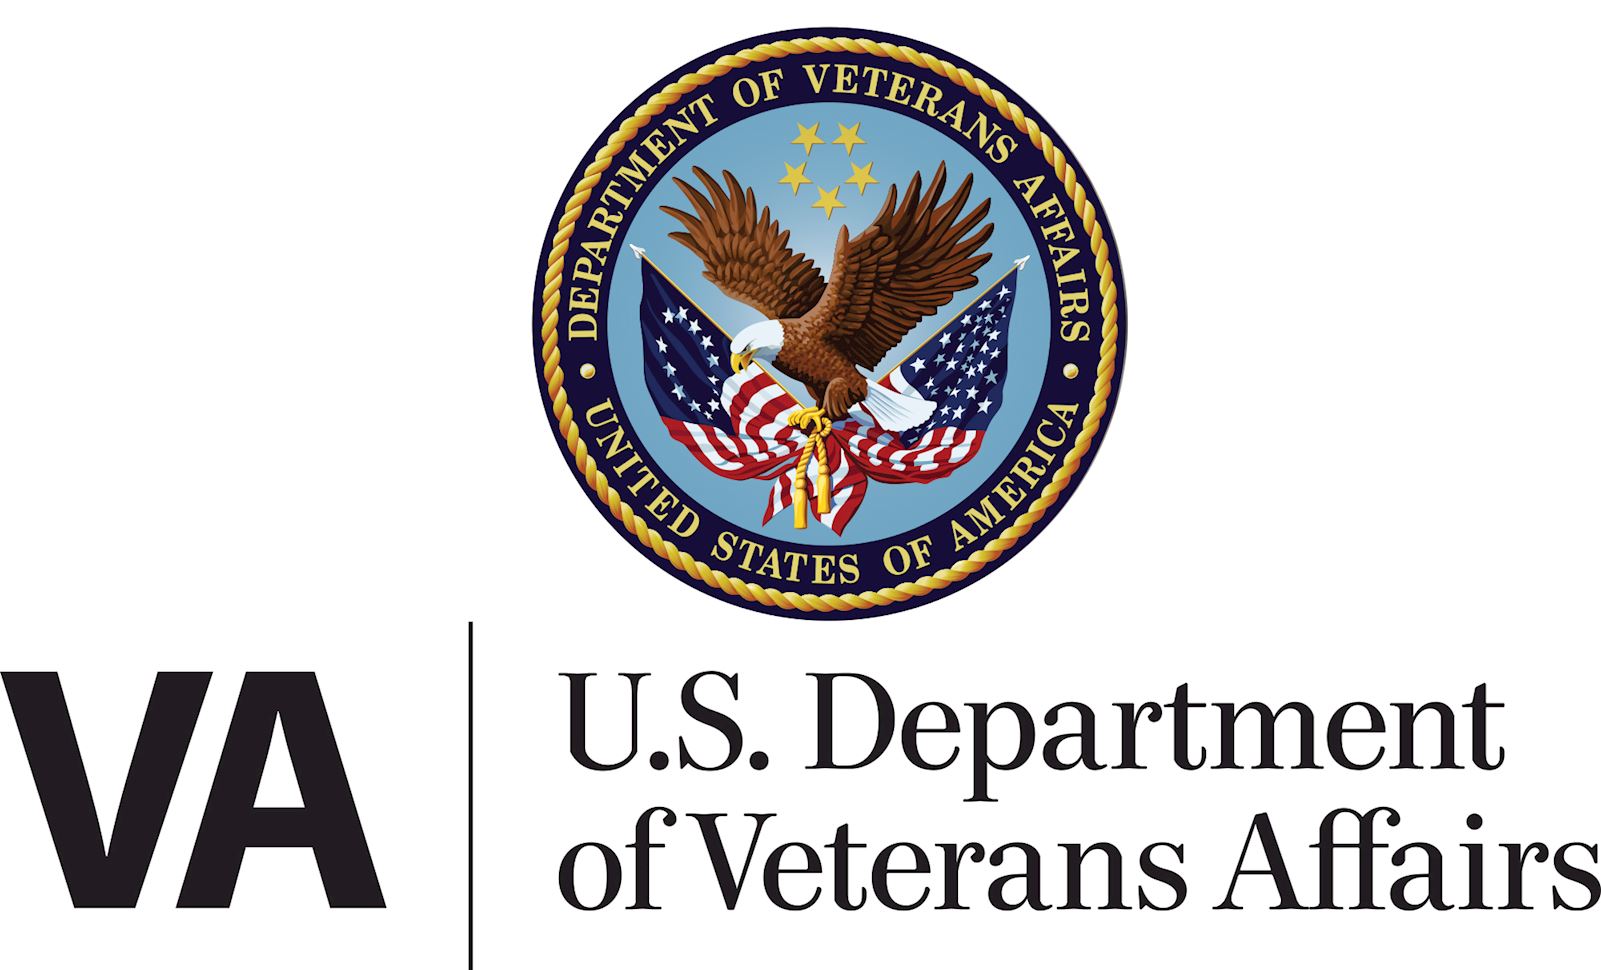 US Department of veterans affairs logo